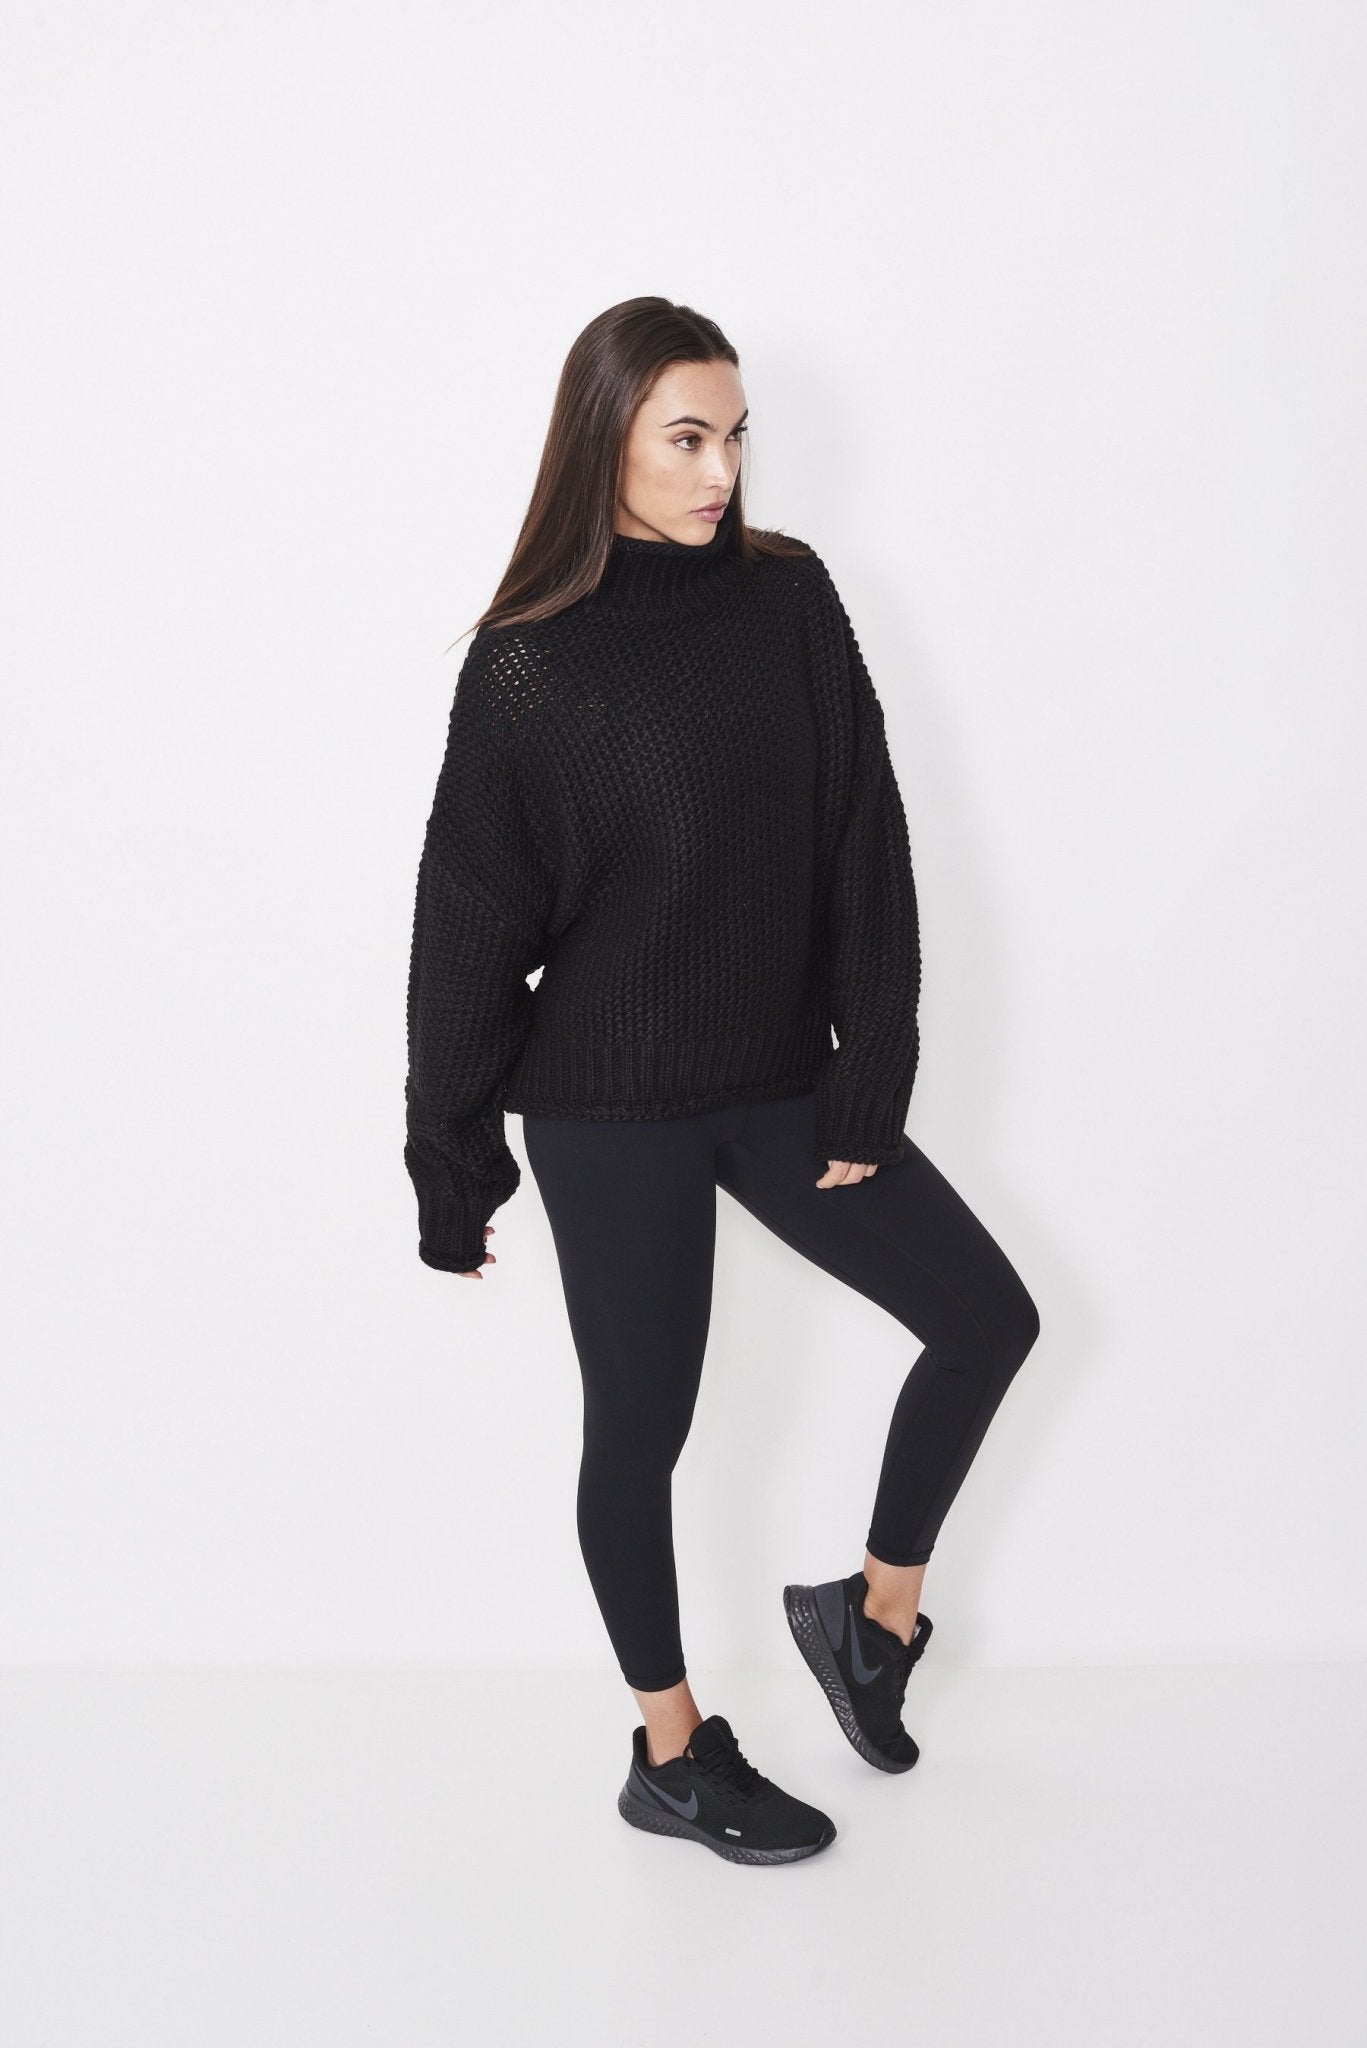 Chunk Knit (Black) Sweater - All Fenix